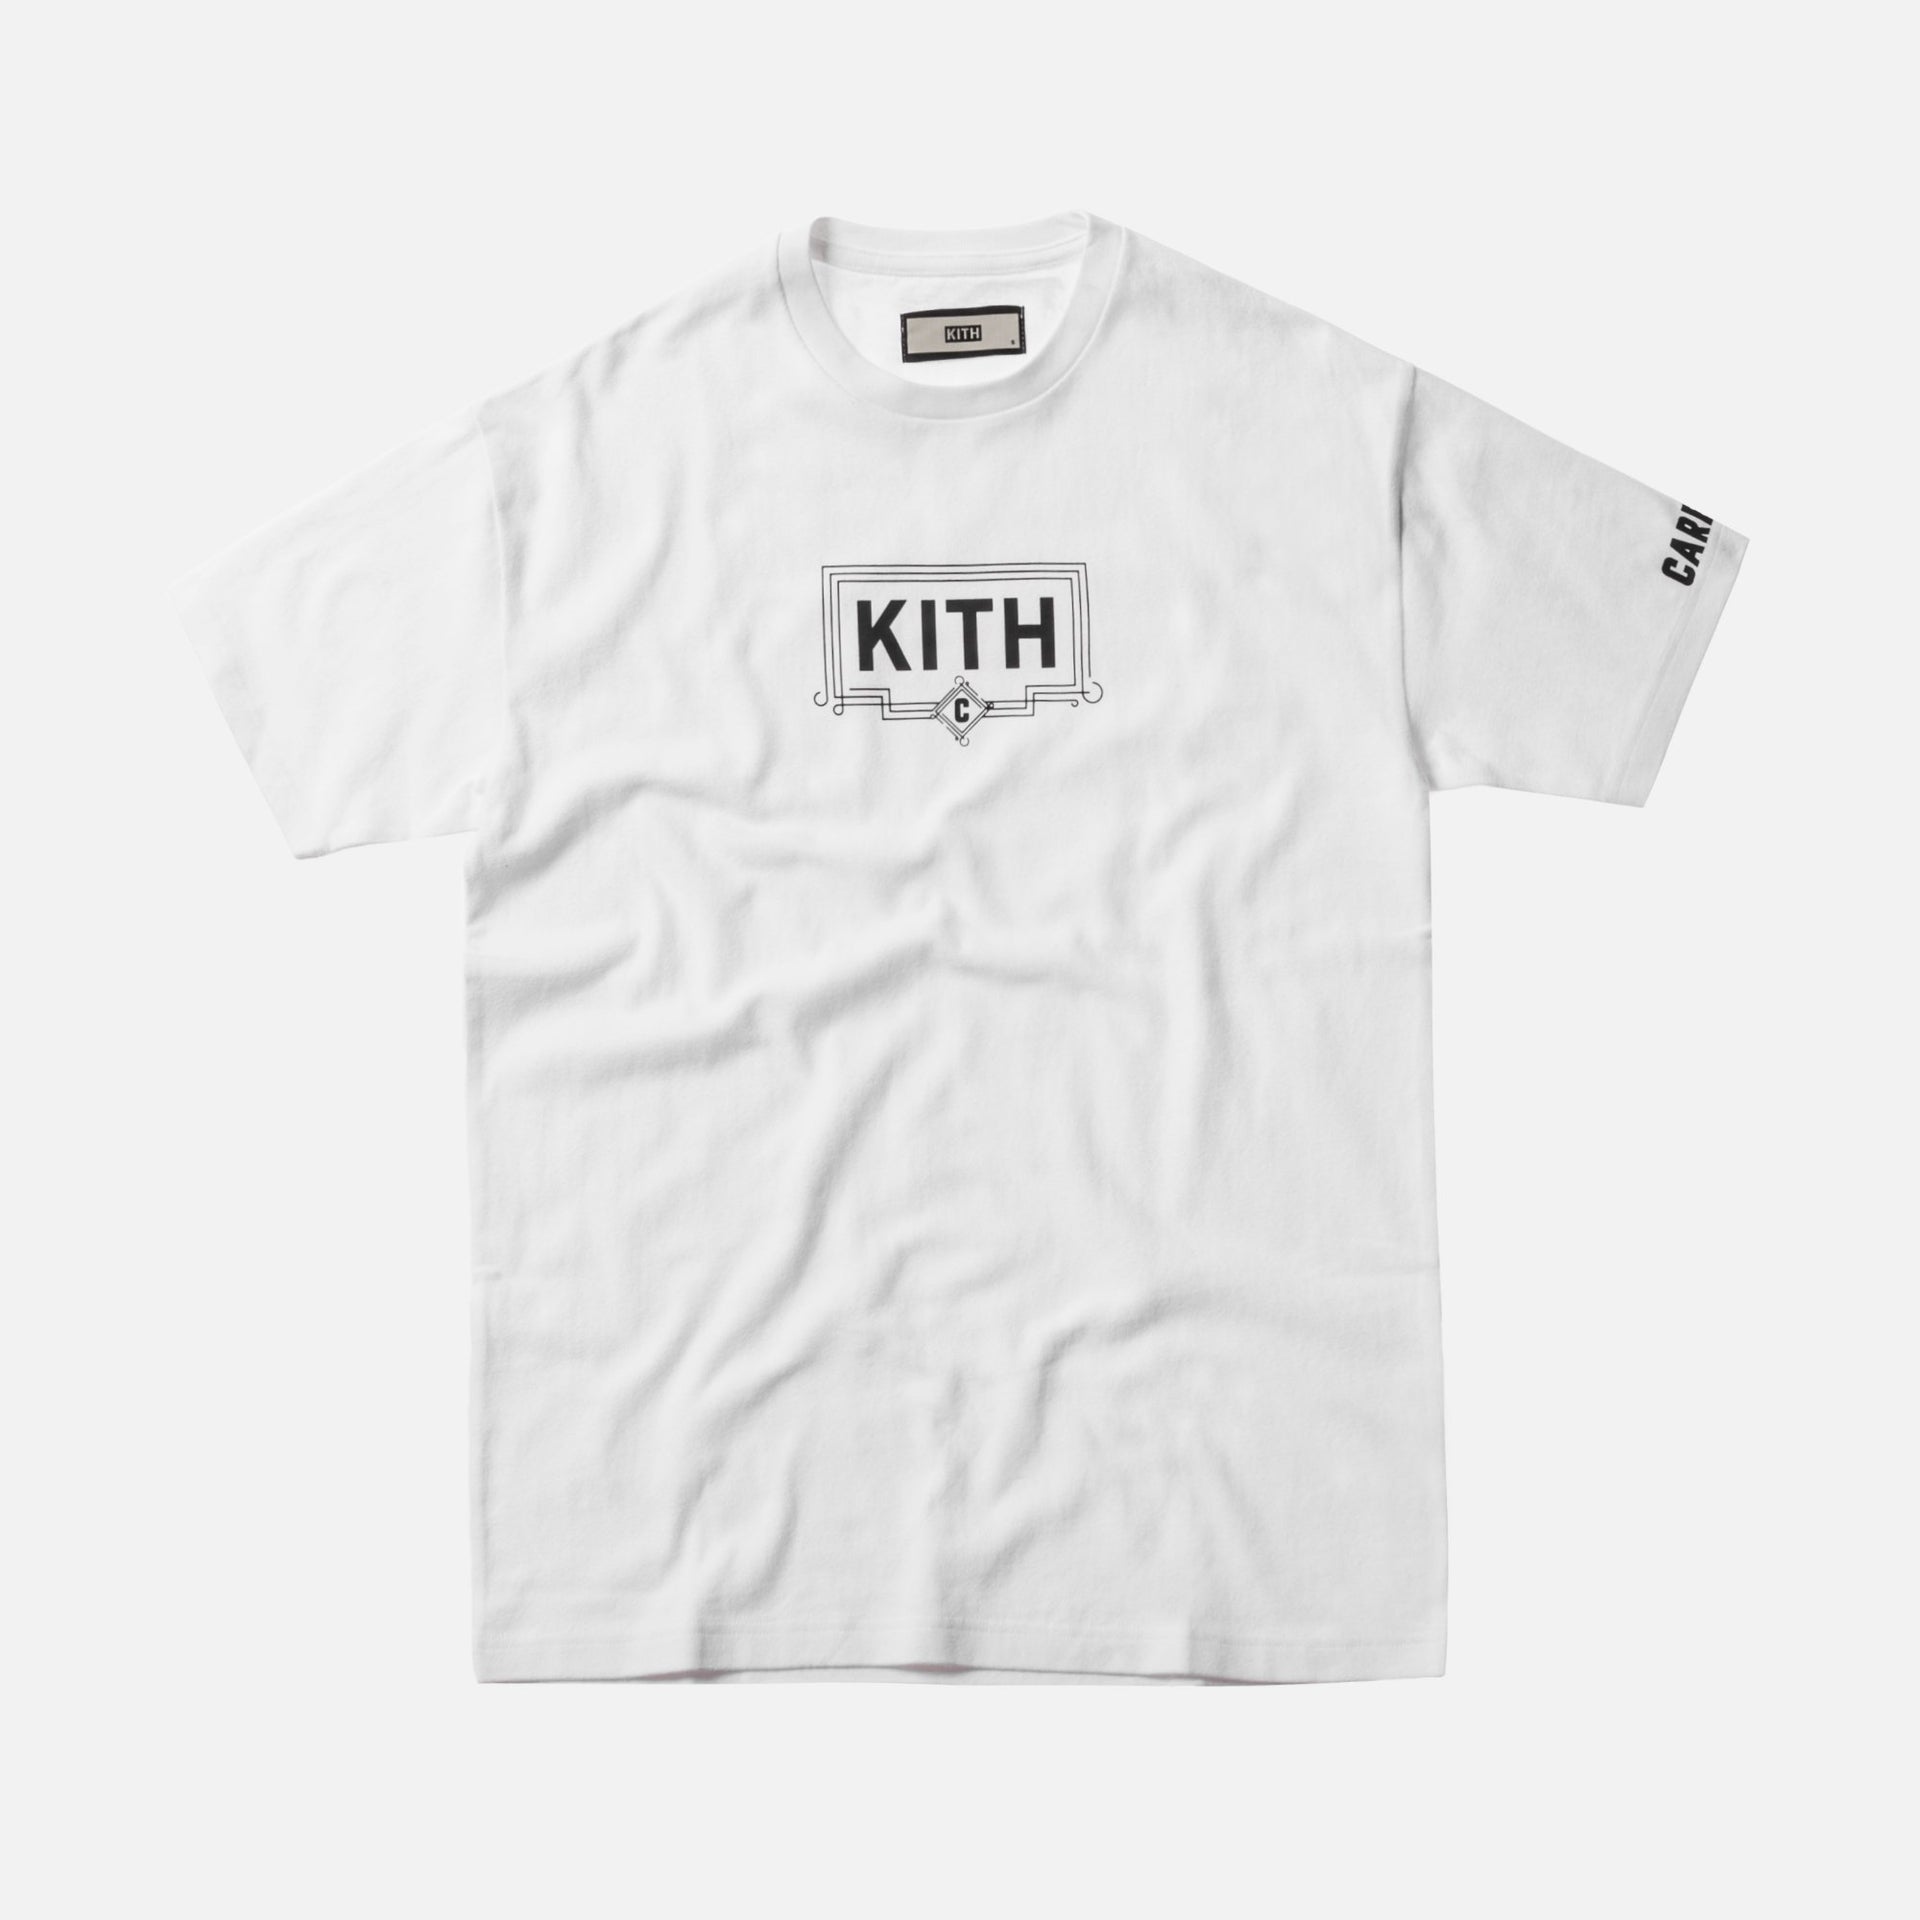 Kith x Carbone Tee - White